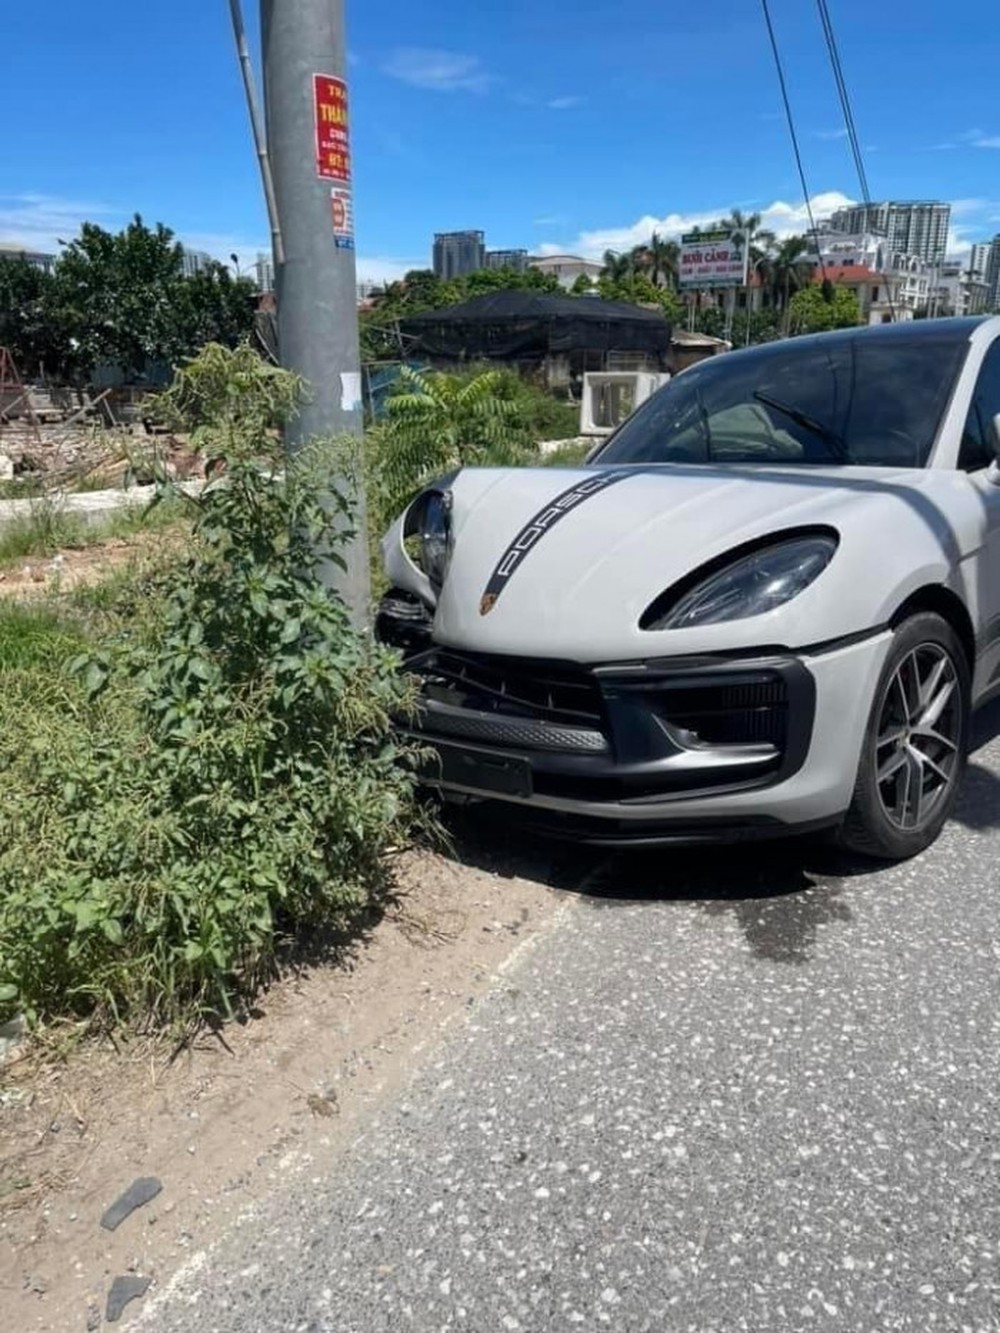 Xôn xao hiện trường vụ siêu xe Porsche gặp tai nạn bất ngờ ở Hưng Yên - Ảnh 1.